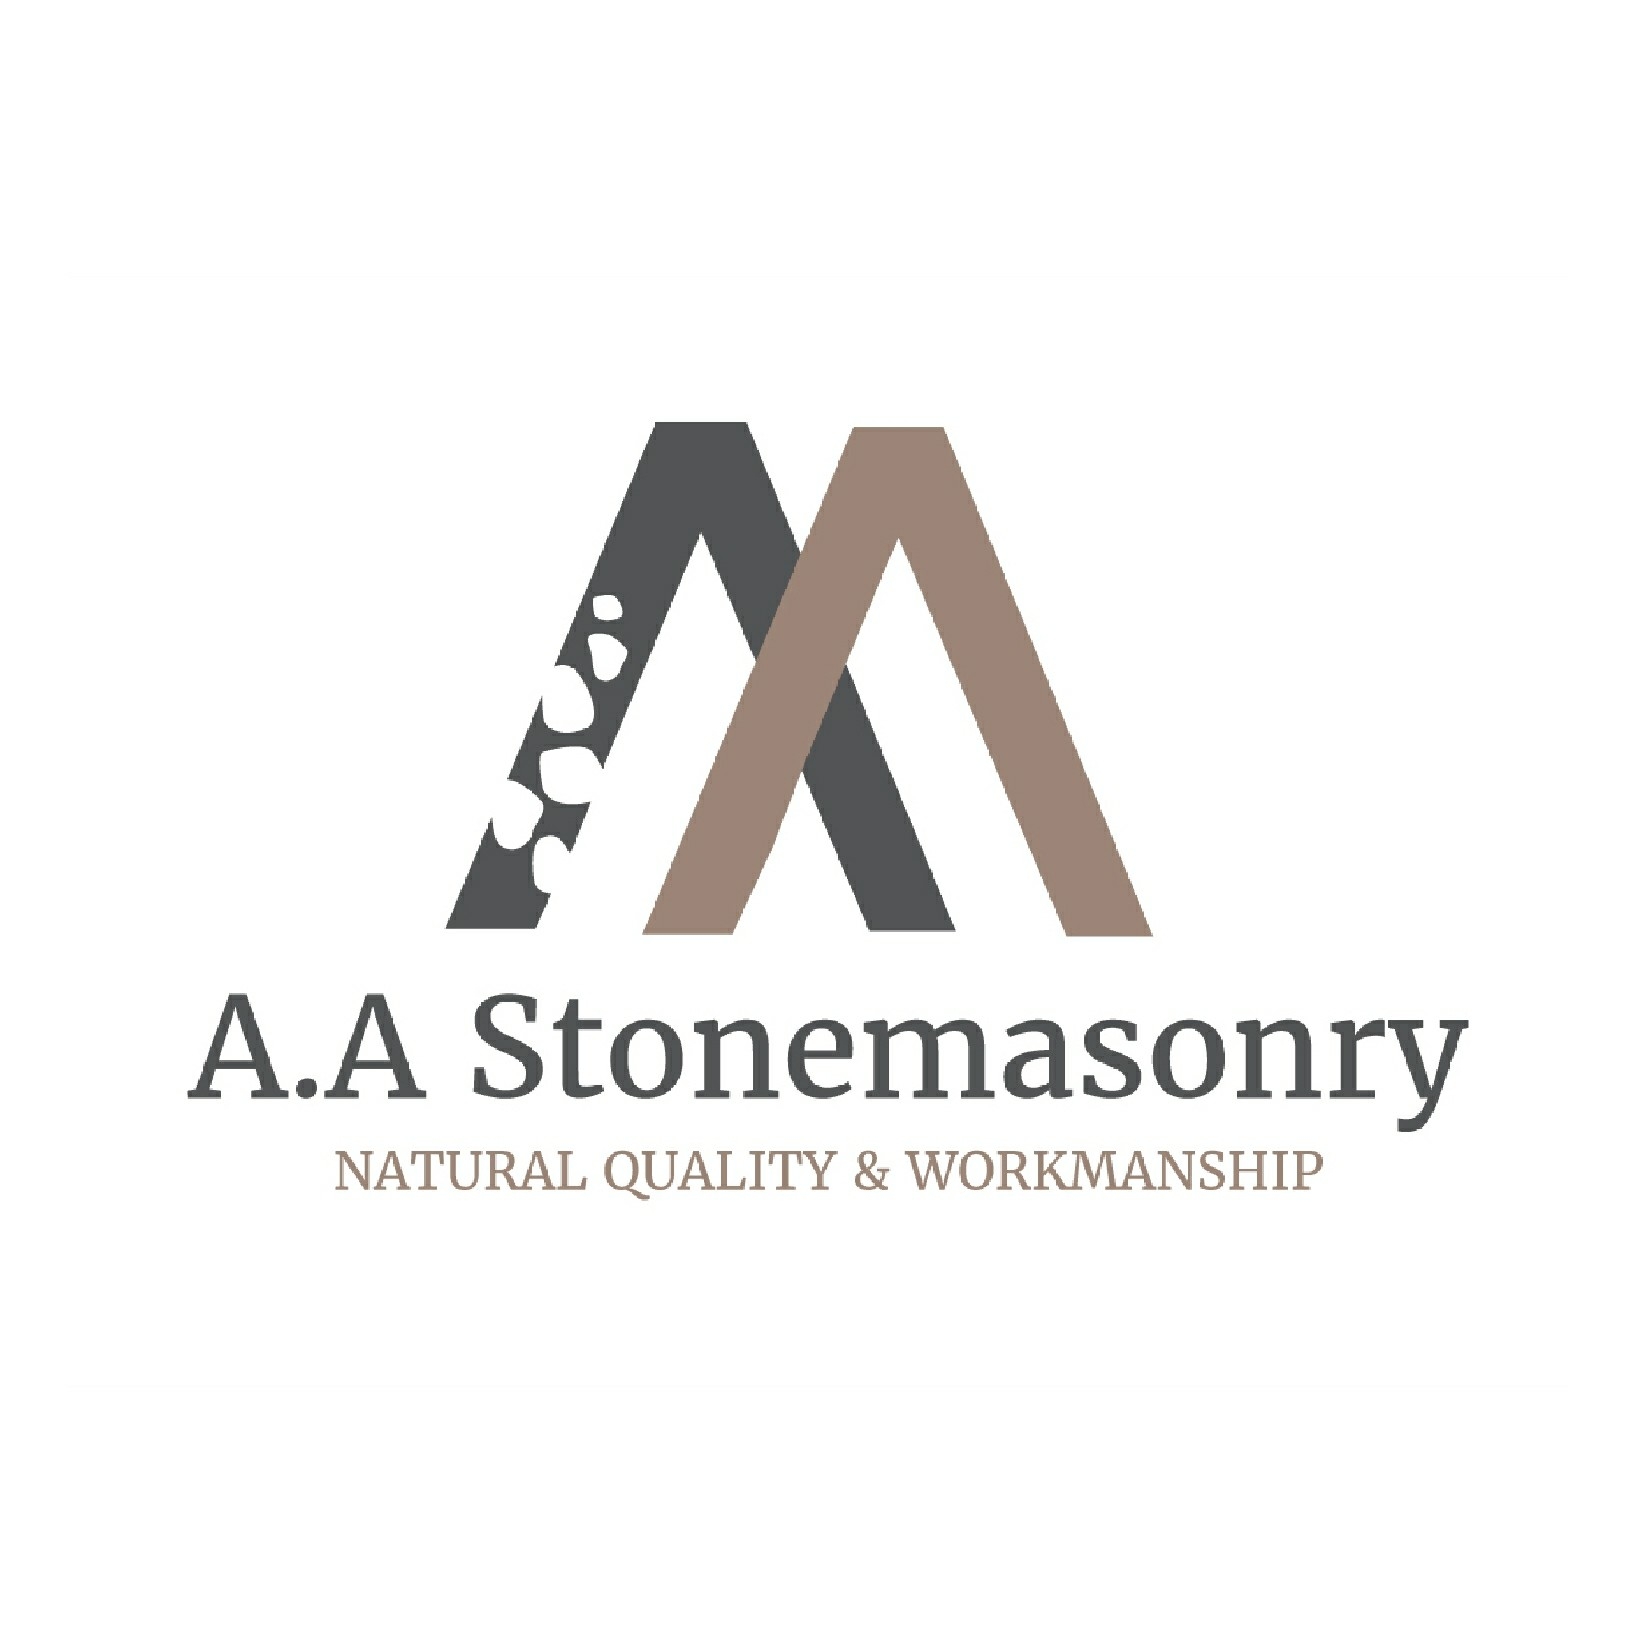 A.A Stonemasonry